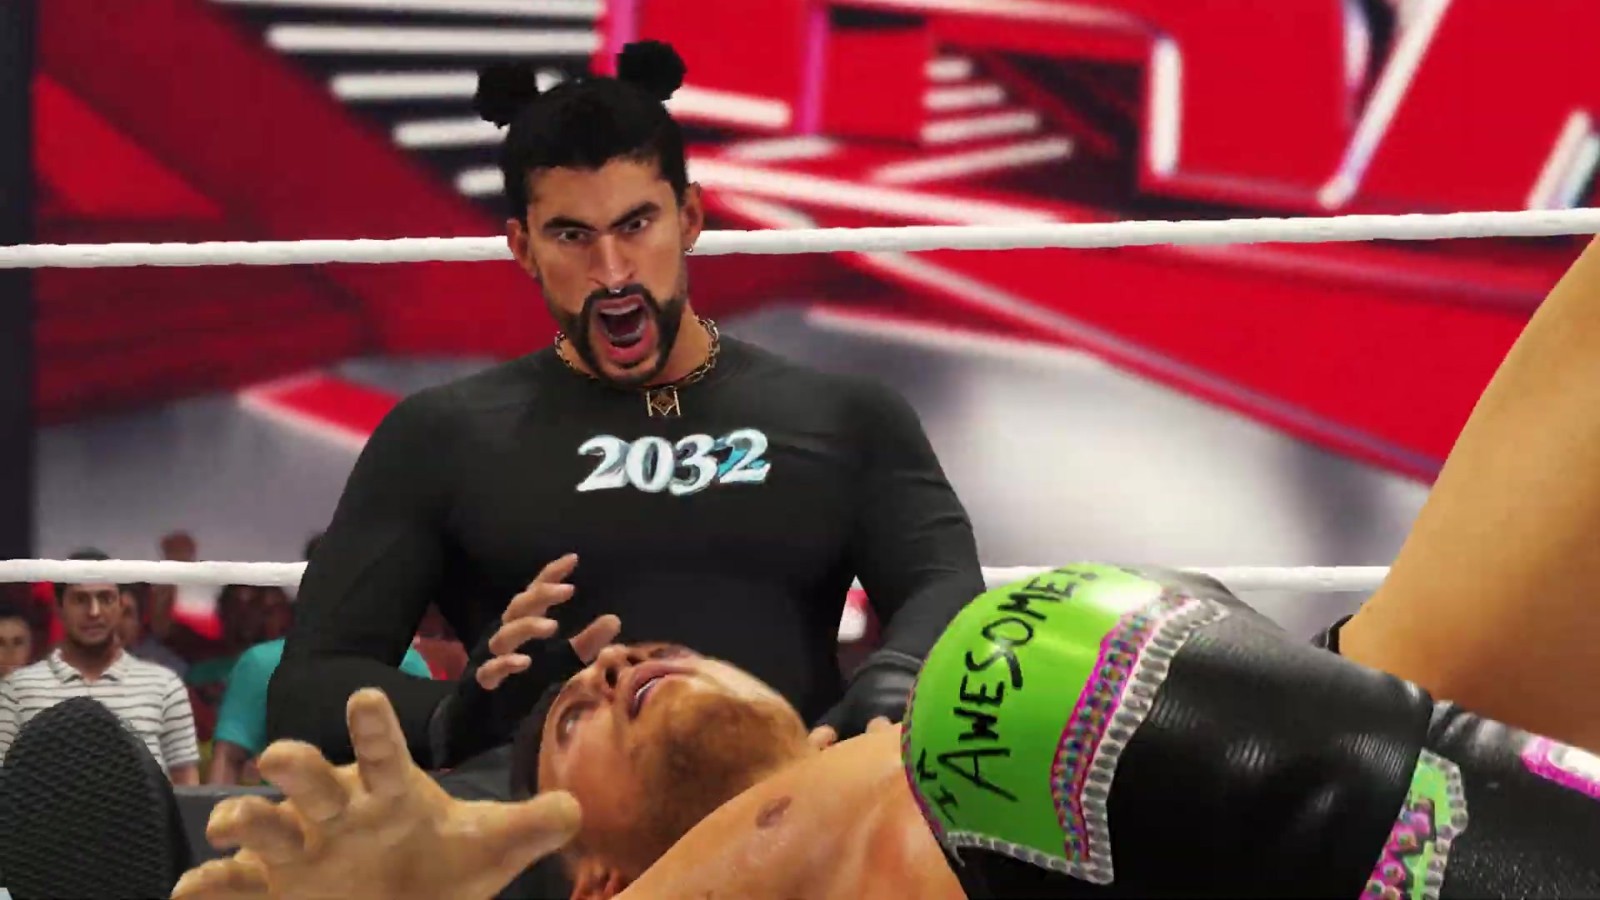 專業摔跤遊戲《WWE 2K23》新預告片分享